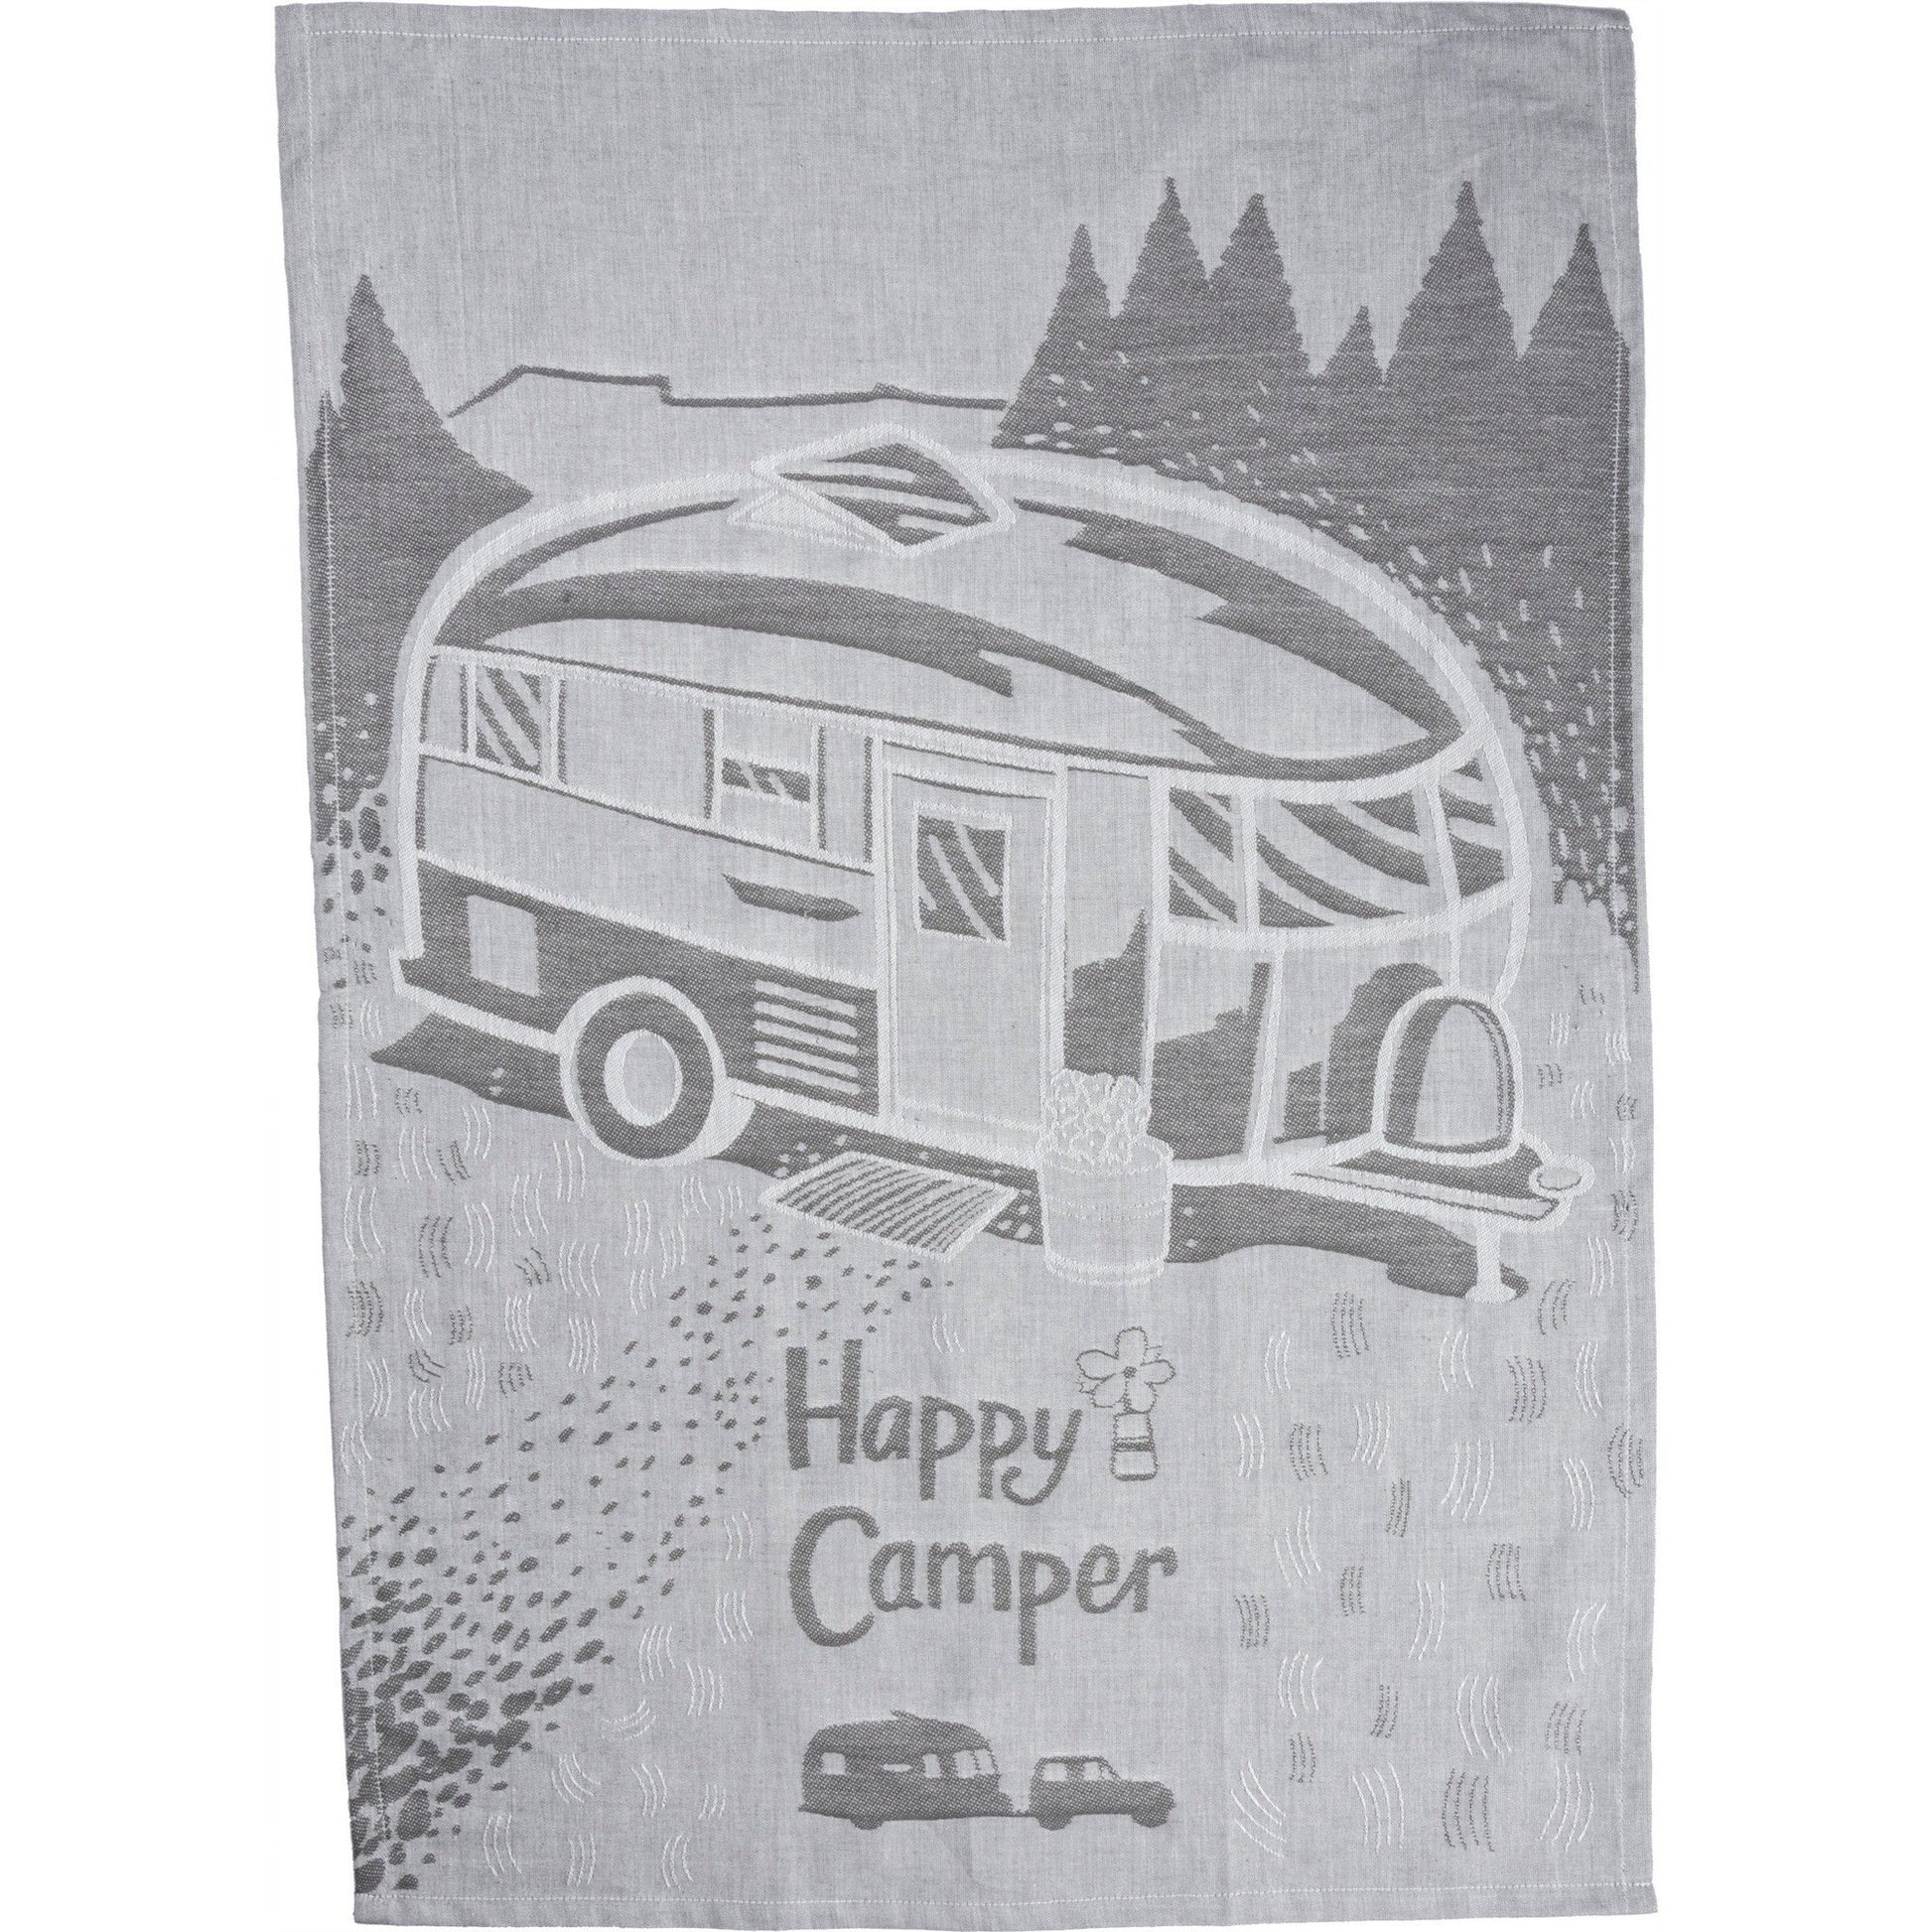 Happy Camper Woven Dish Cloth Towel | Novelty Tea Towels | Cute Kitchen Hand Towel | 20" x 28"